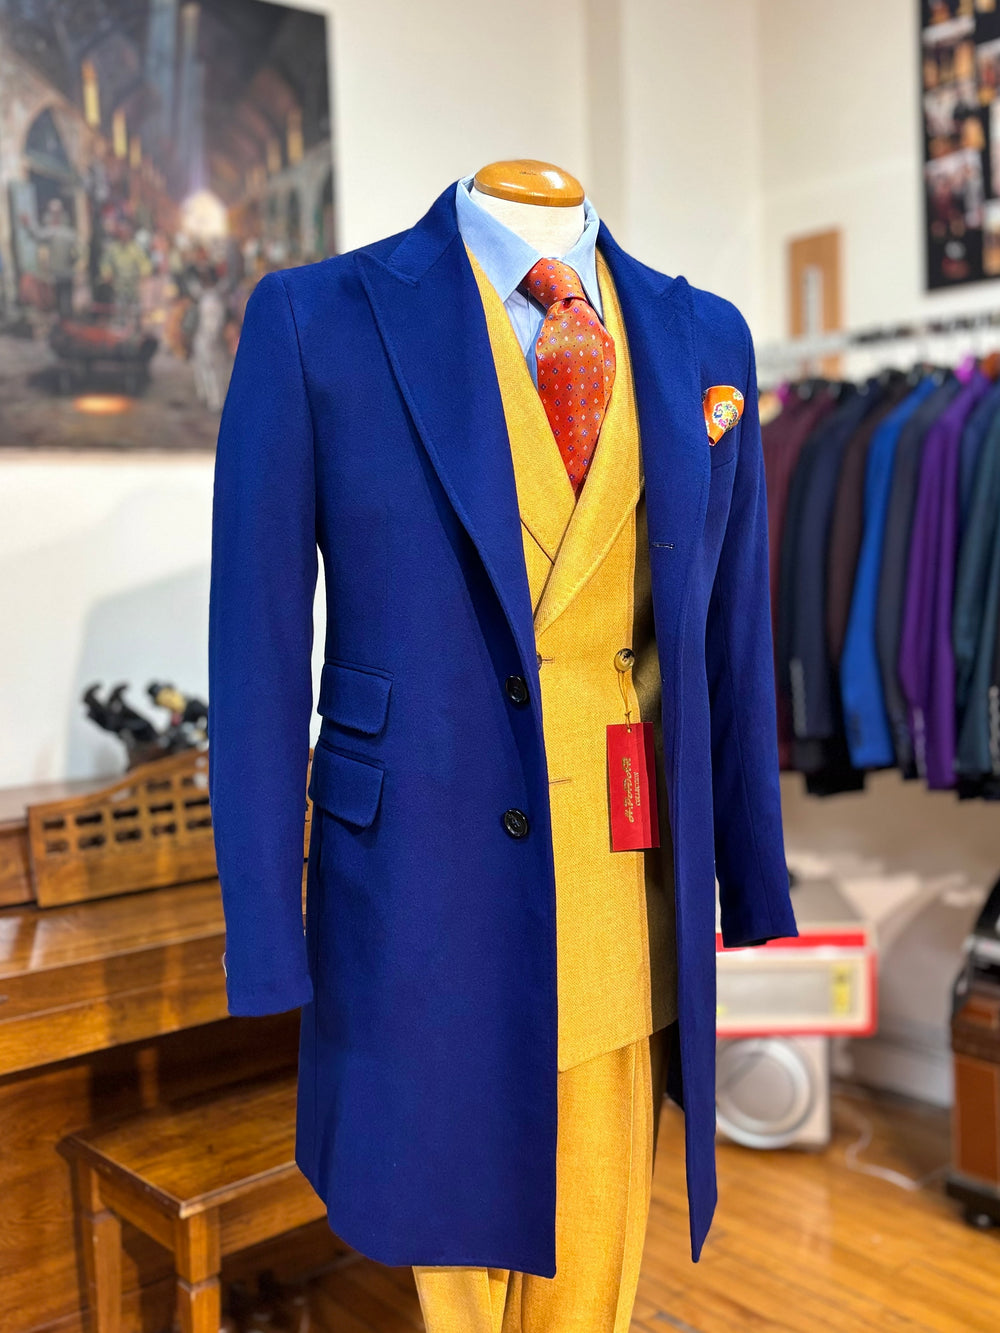 HPadar Royal Blue Coat